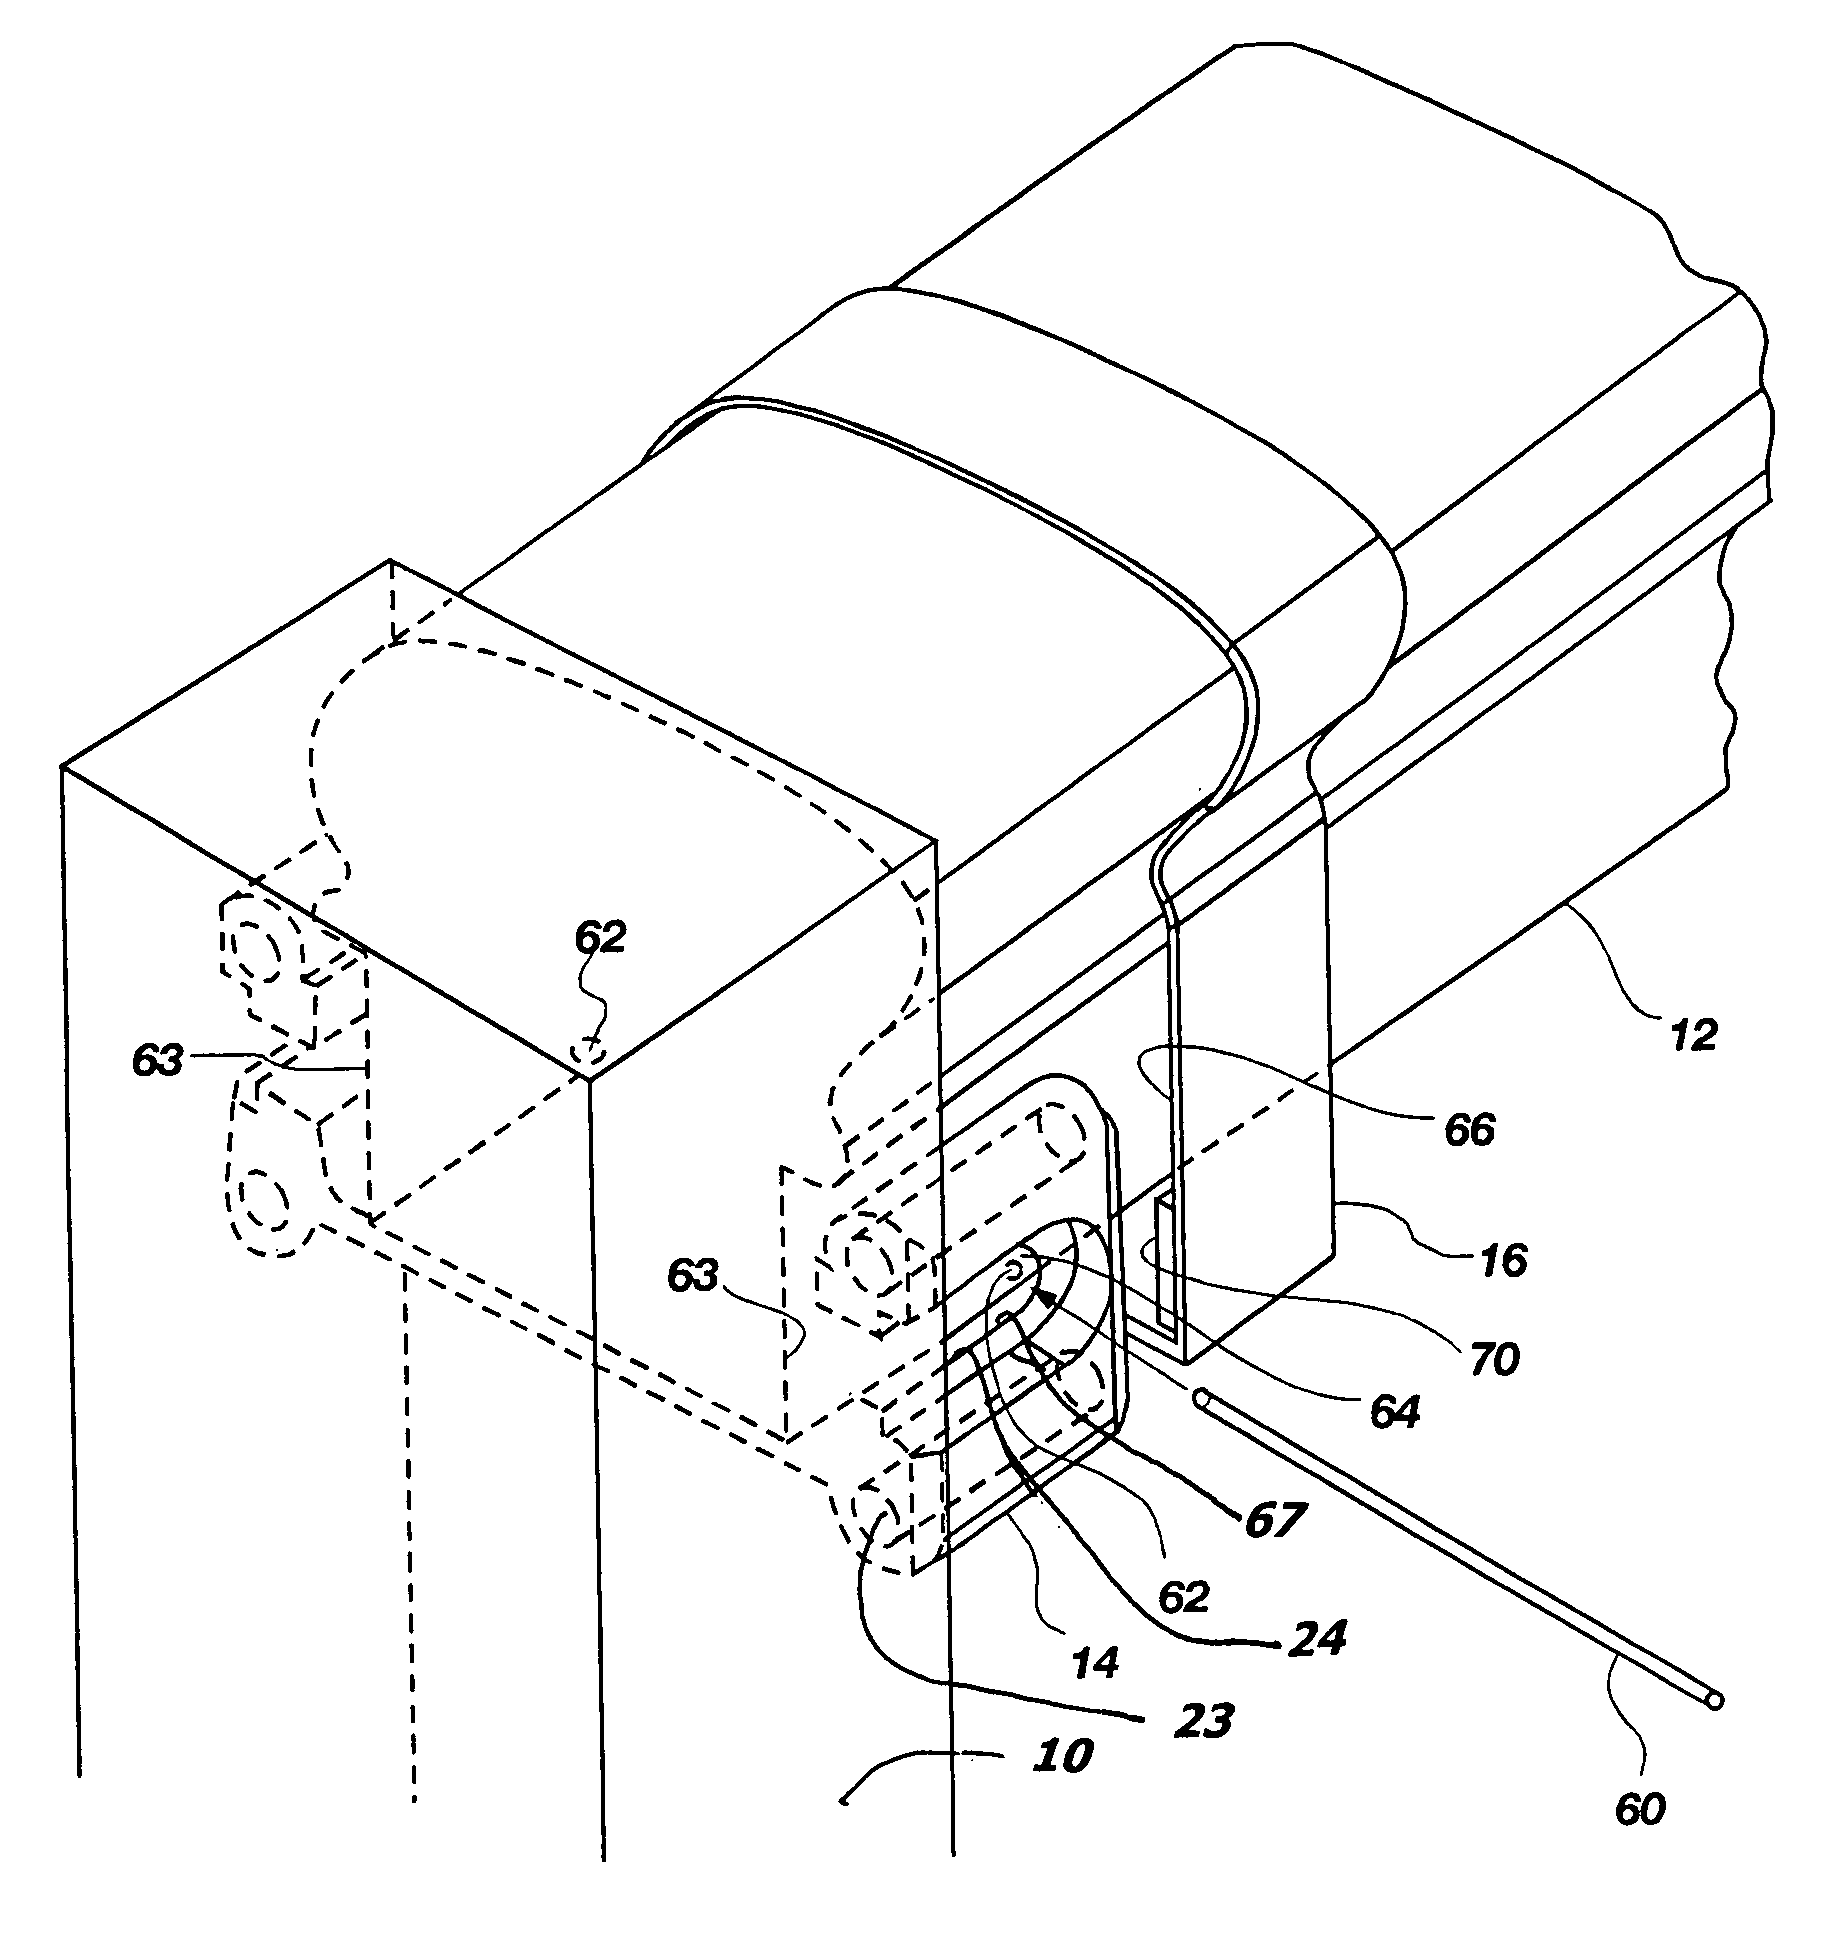 Rail bracket mounting system with locking pin